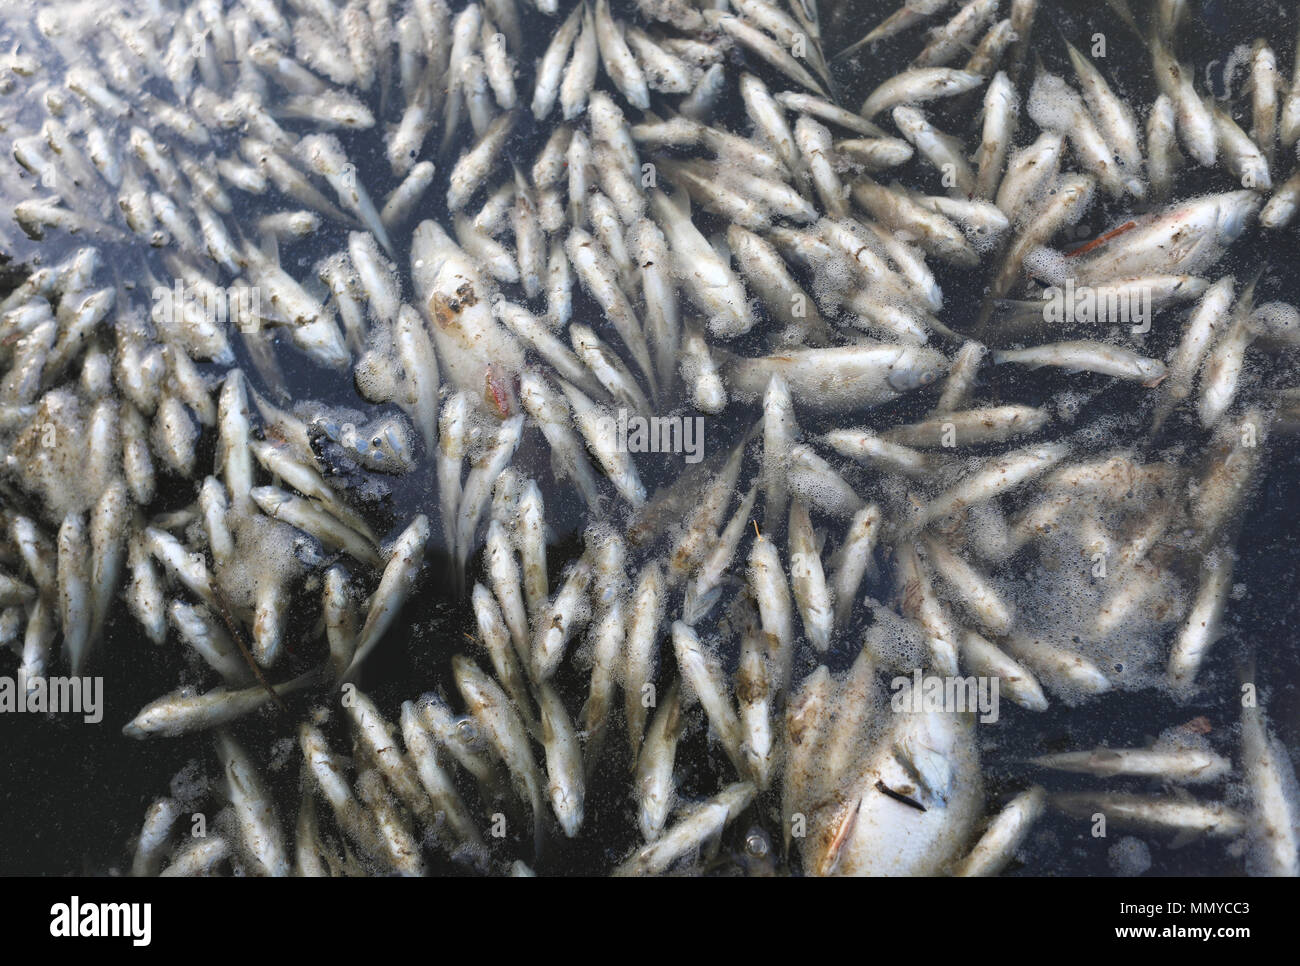 Centinaia di pesci morti in acqua contaminata Foto Stock